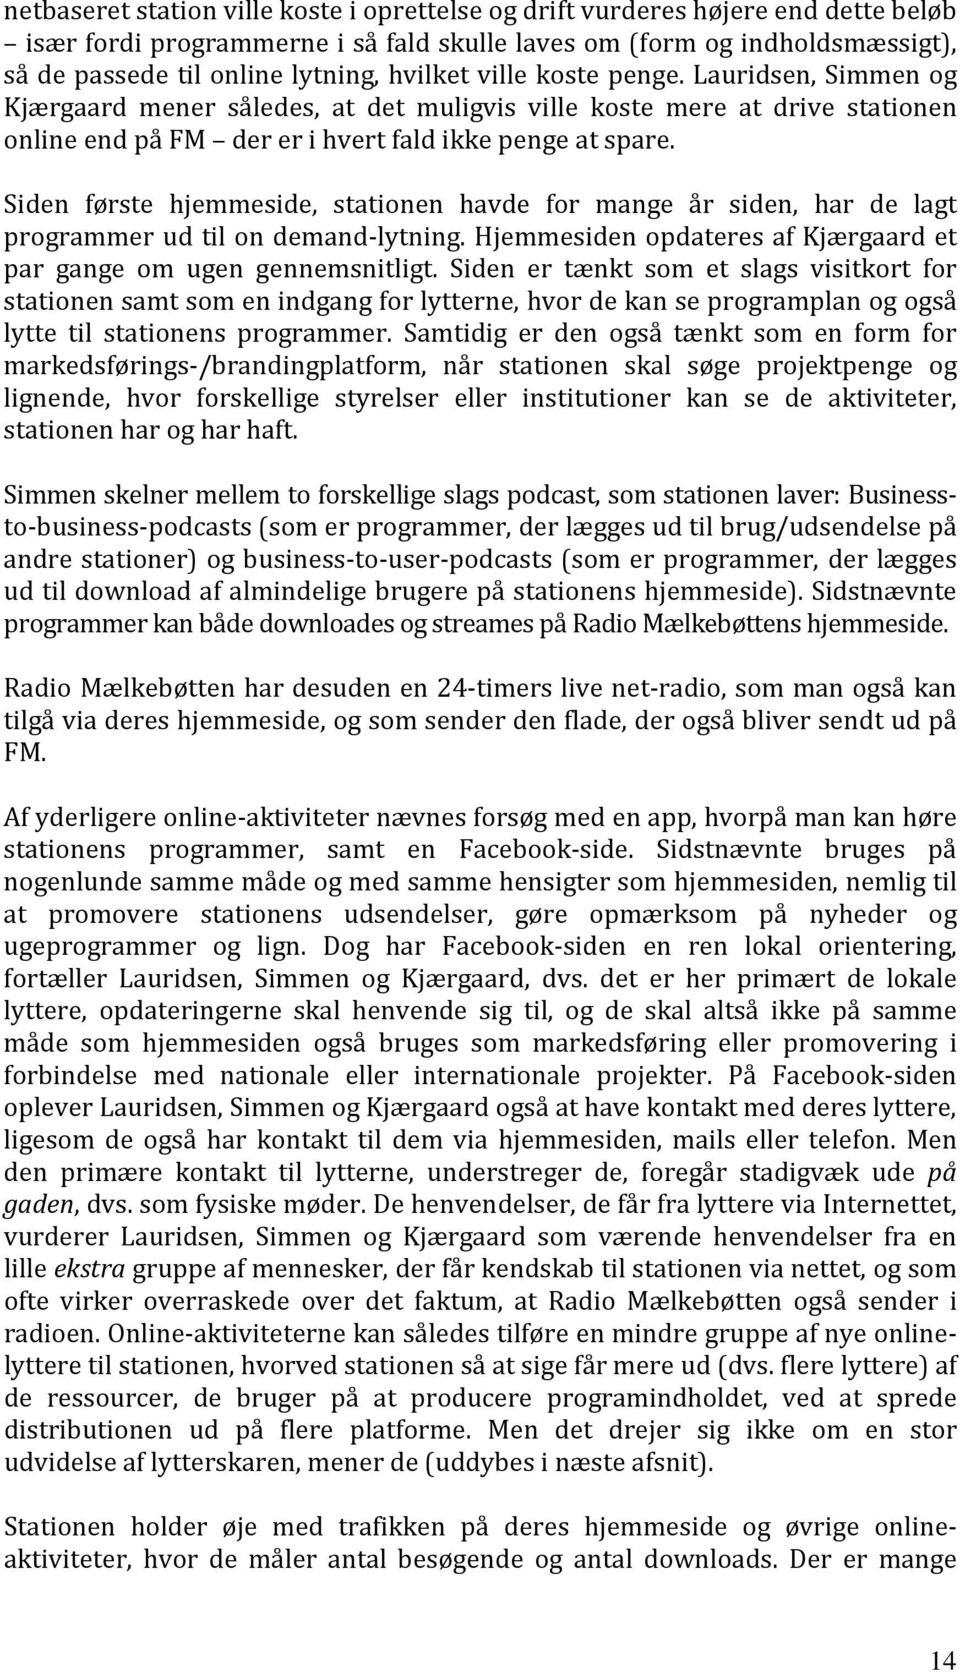 Siden første hjemmeside, stationen havde for mange år siden, har de lagt programmer ud til on demand-lytning. Hjemmesiden opdateres af Kjærgaard et par gange om ugen gennemsnitligt.